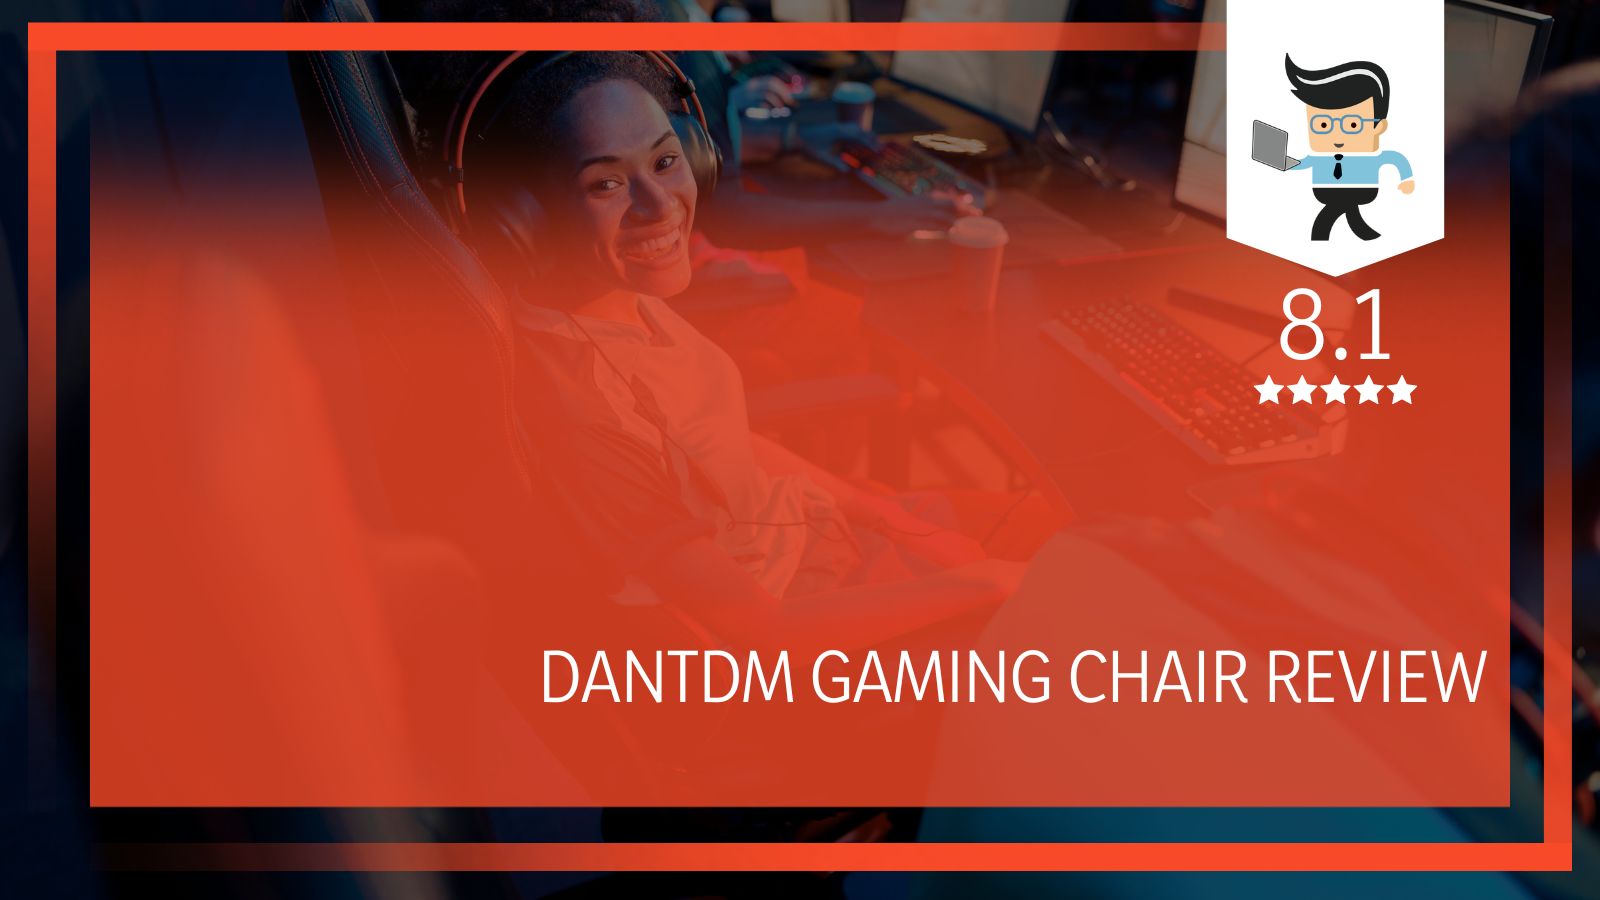 DanTDM Gaming Chair Review